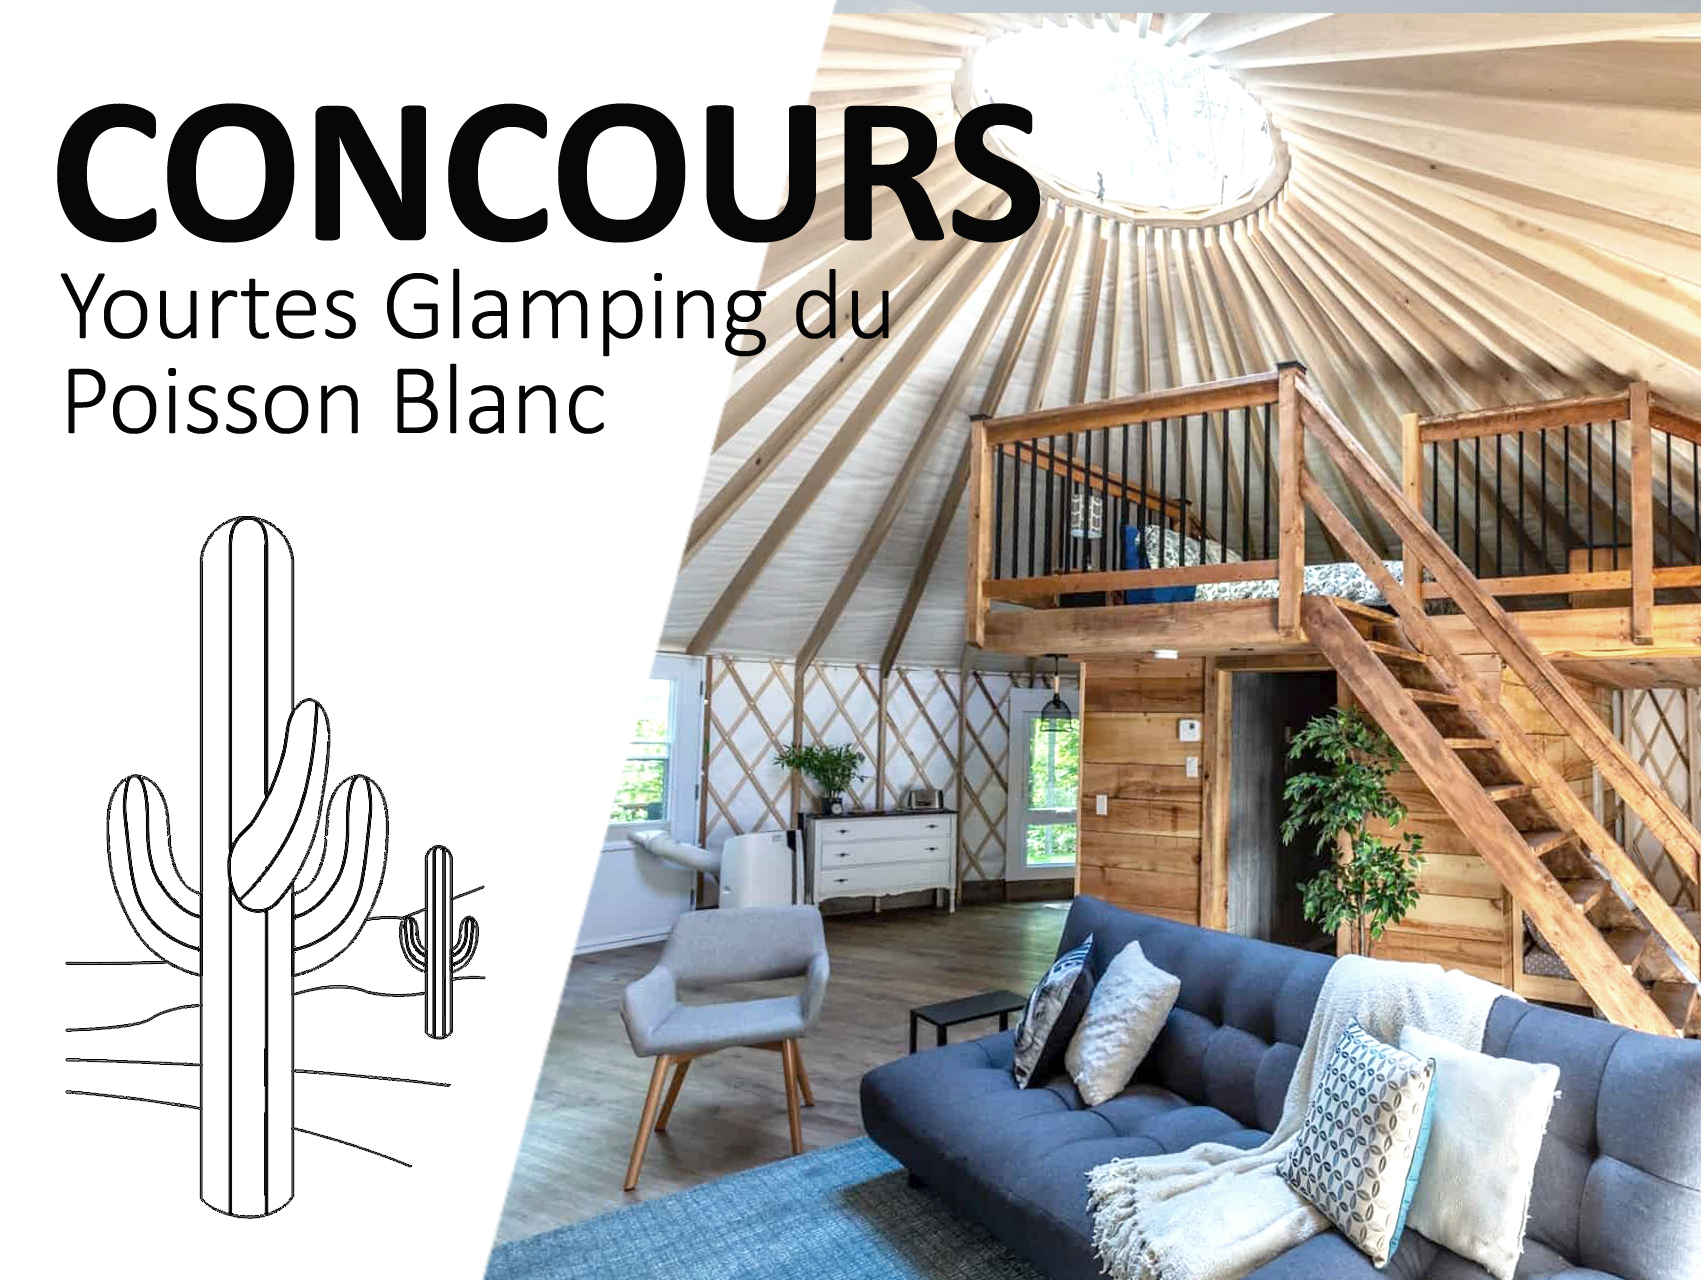 Concours Gagnez un séjour de deux jours pour deux personnes aux Yourtes Glamping du Poisson Blanc !